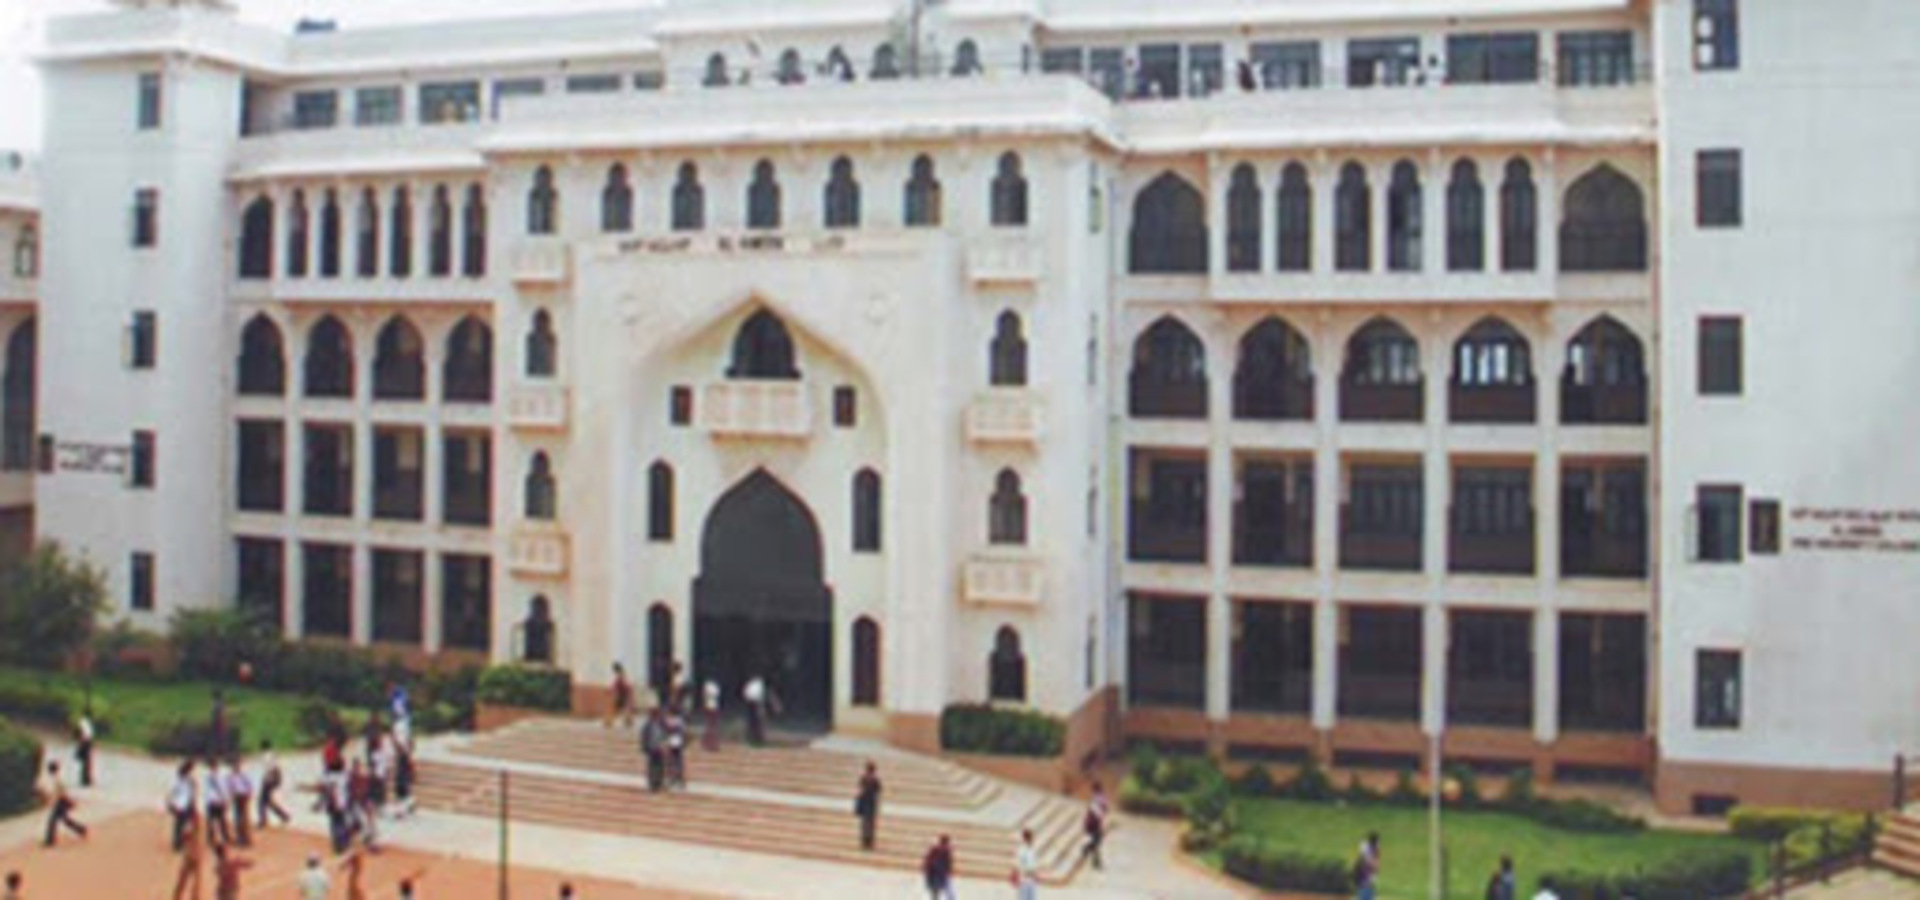 Al-Ameen Medical College